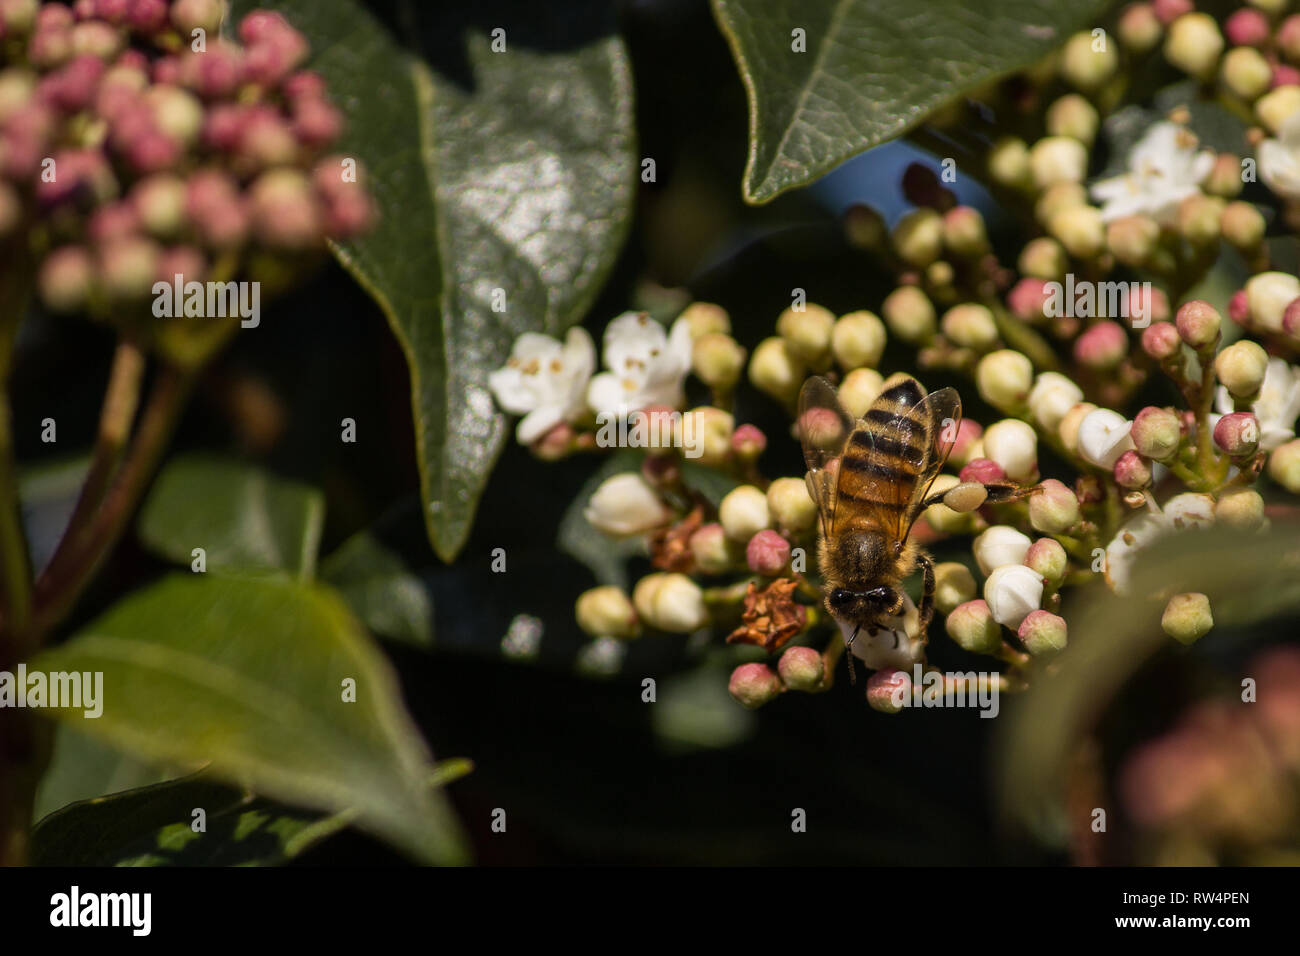 La pollinisation, l'excellent travail des abeilles, ils visitent les fleurs recueillir le nectar de recueillir le pollen dans le bas sur l'abdomen Banque D'Images